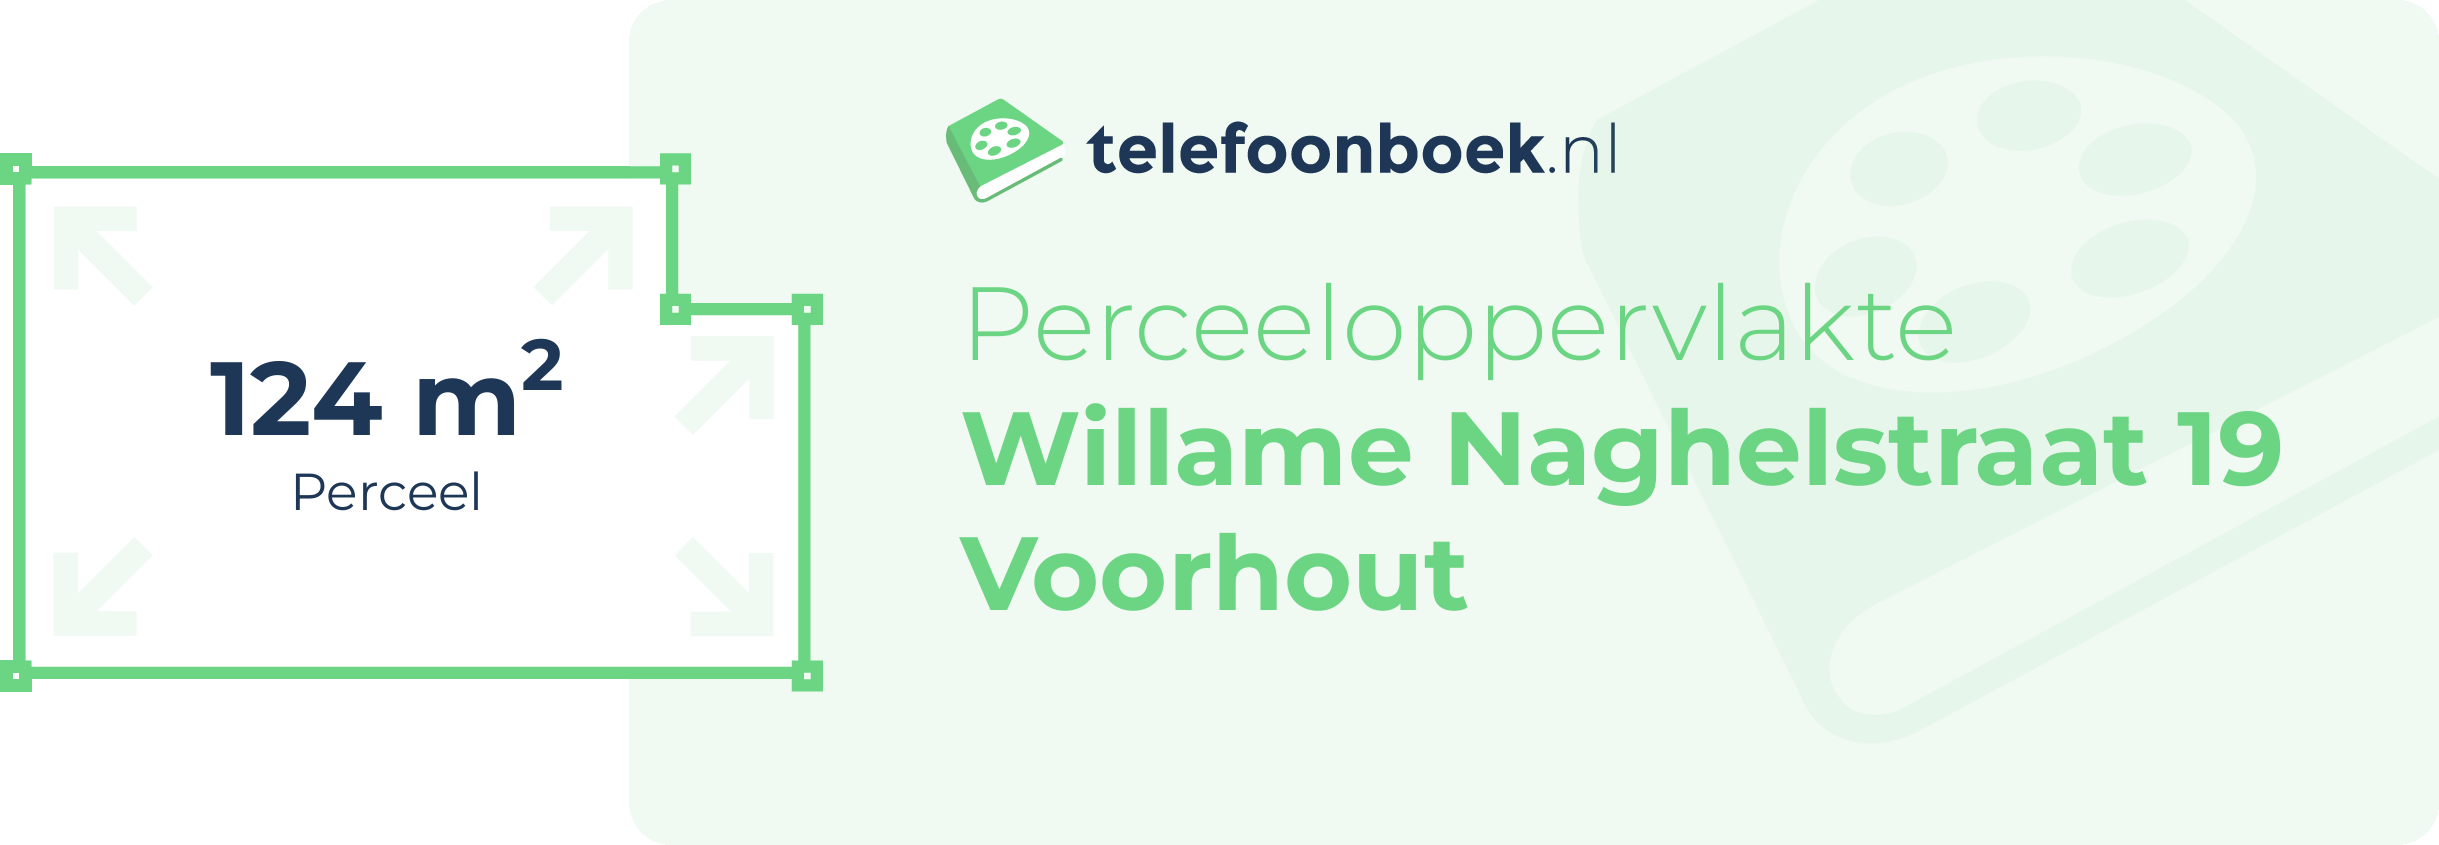 Perceeloppervlakte Willame Naghelstraat 19 Voorhout